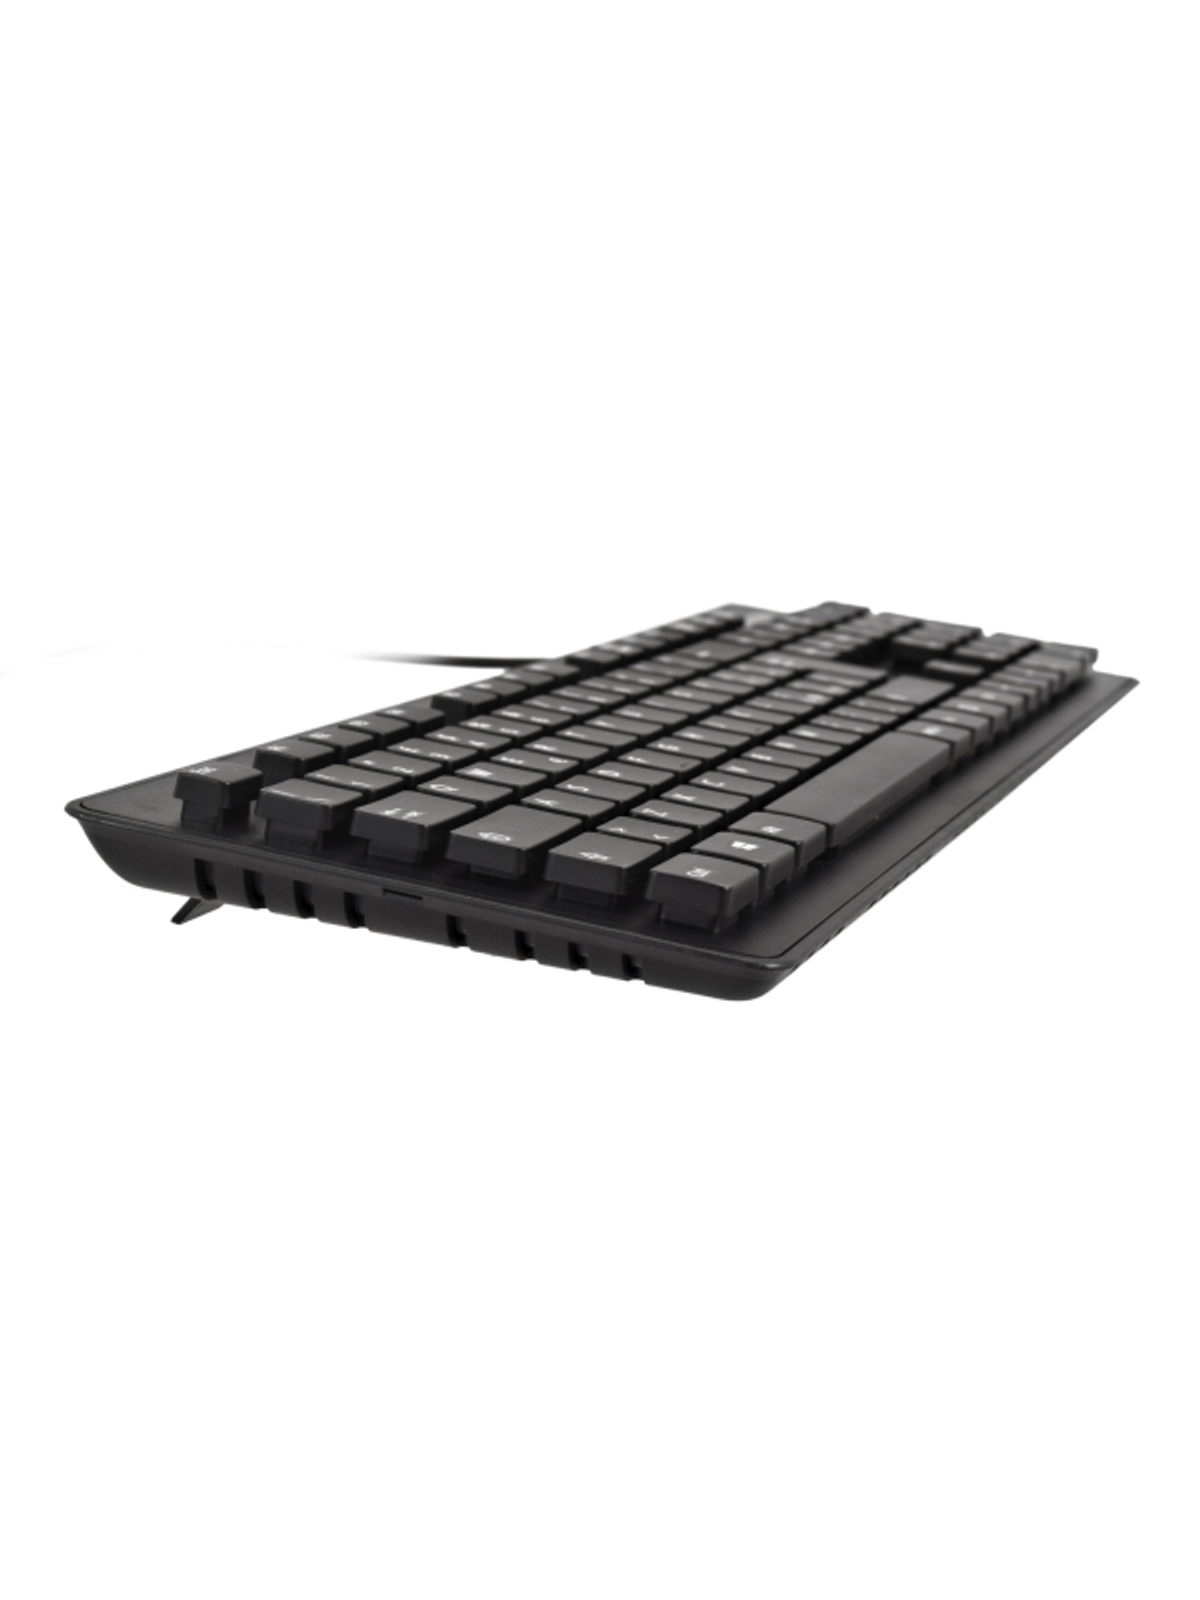 V7 Schwarz Maus Tastatur Set, CKU700IT,